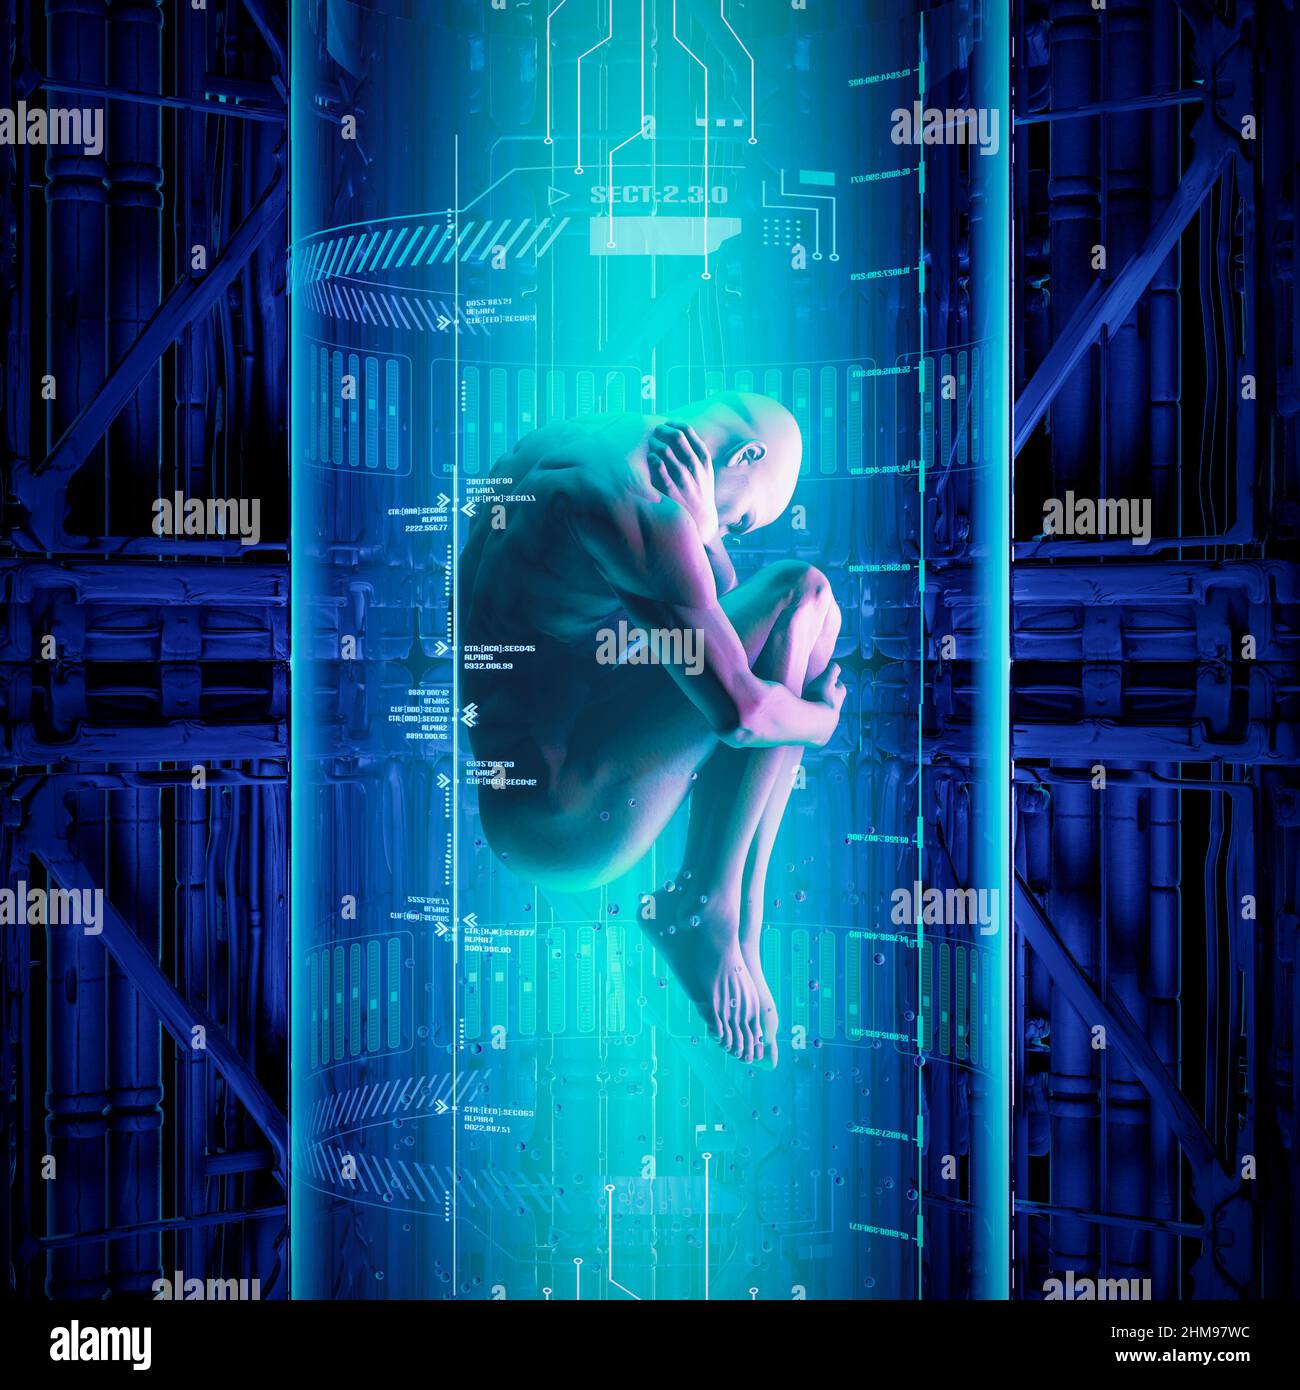 Man clone - 3D ilustración de la escena de ciencia ficción que muestra la figura masculina humana flotando dentro del tubo futurista de clonación médica Foto de stock